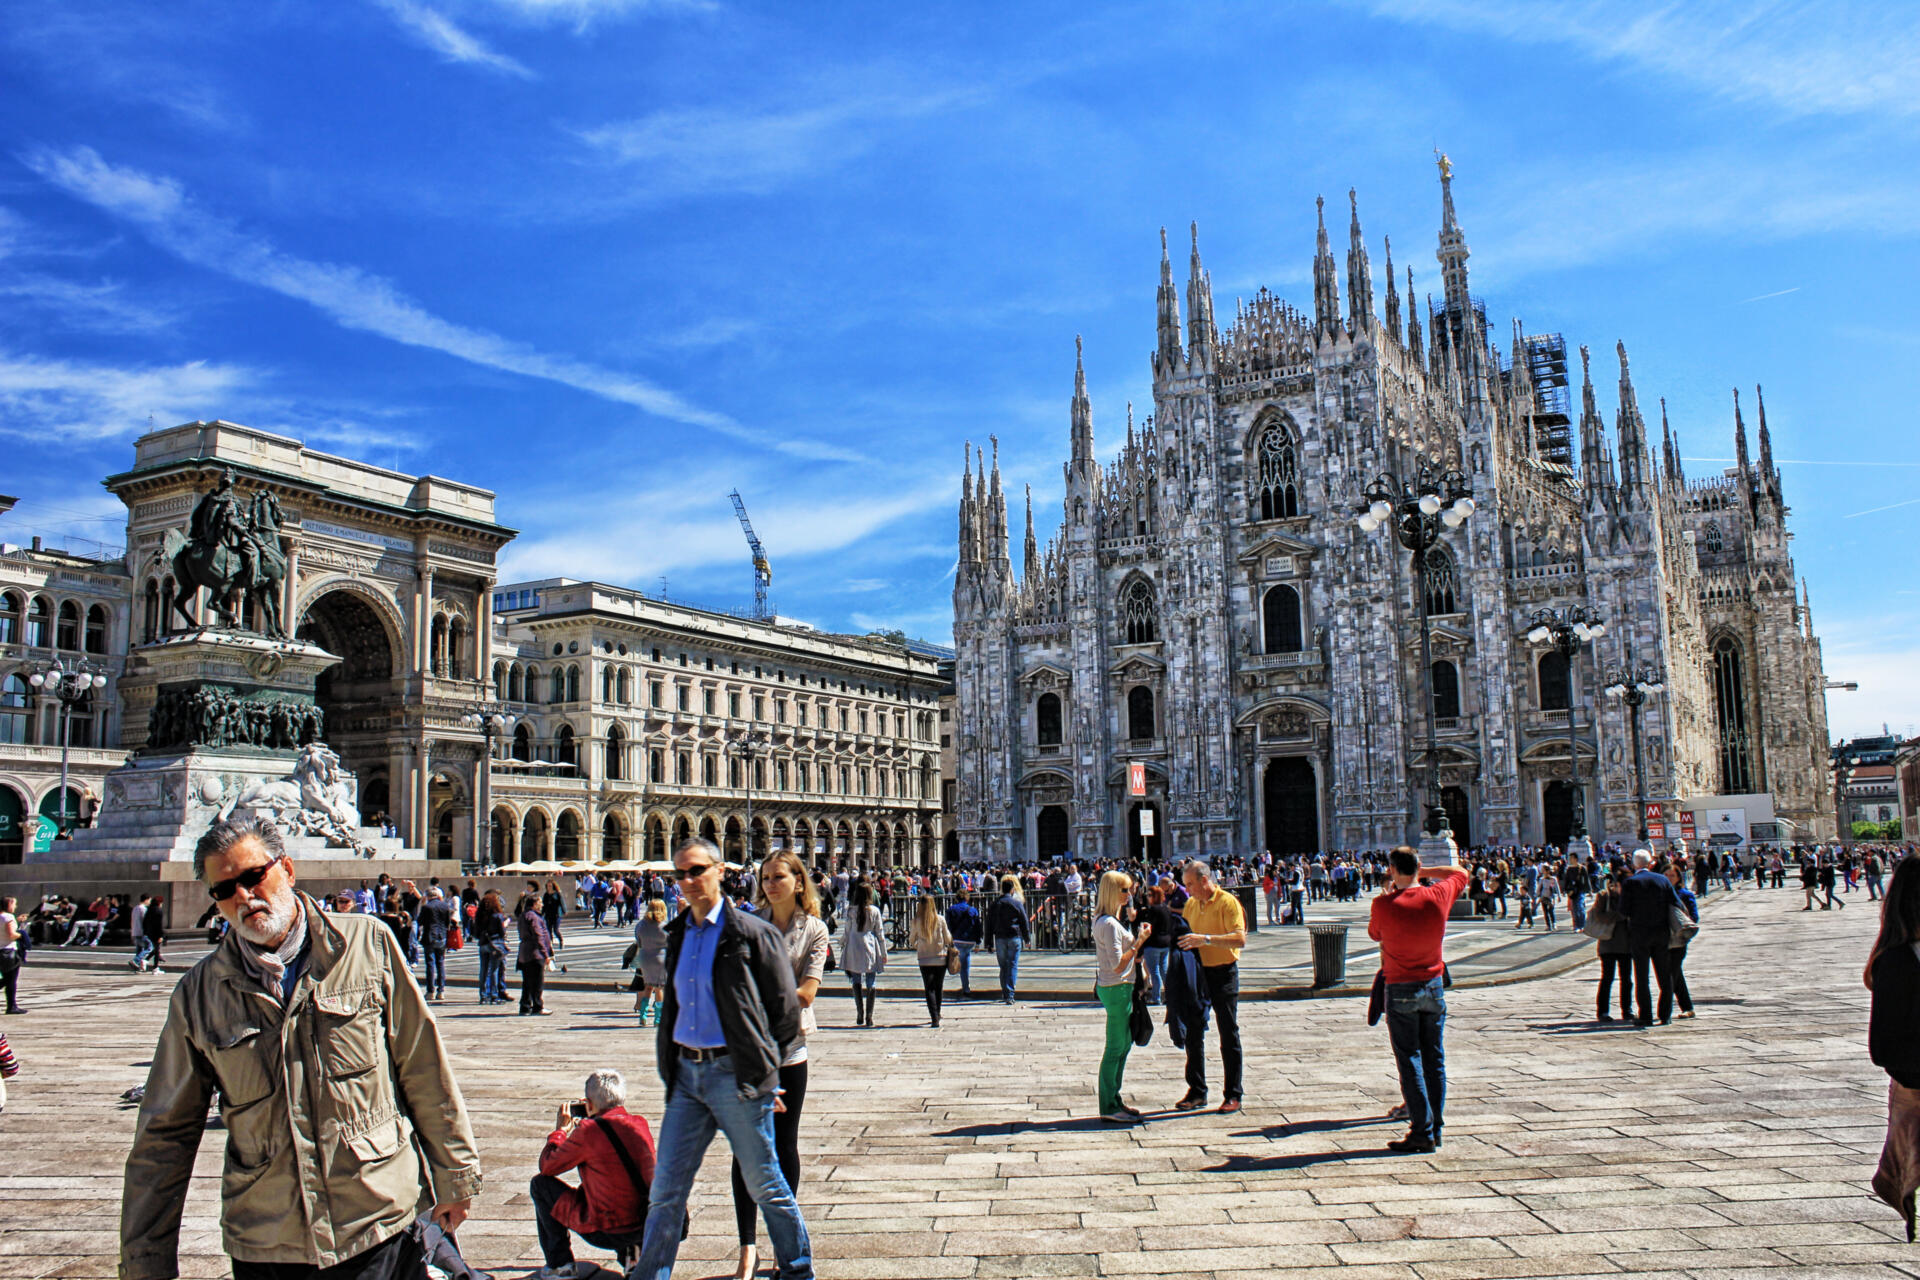 Mailand – da denkt man an die „Piazza del Duomo“ mit dem gotischen Dom aber auch an die historische „Galleria Vittorio Emanuelle II“, eine überdachte Ladenstraße, die schon im Jahre 1877 die größte Einkaufspassage Europas darstellte.